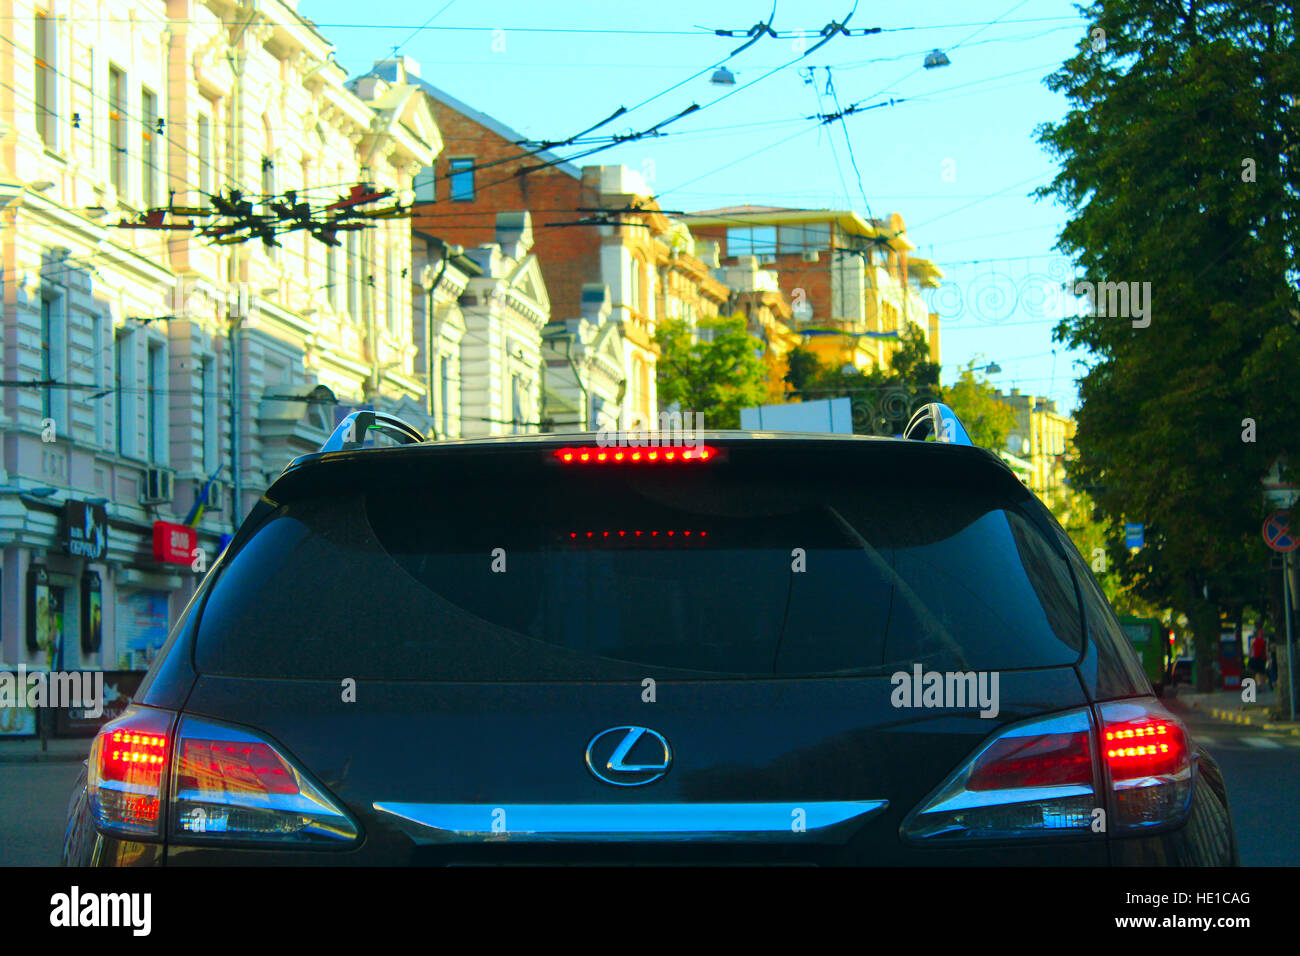 Vista de la parte posterior del automóvil Lexus circulando en Kharkov Foto de stock